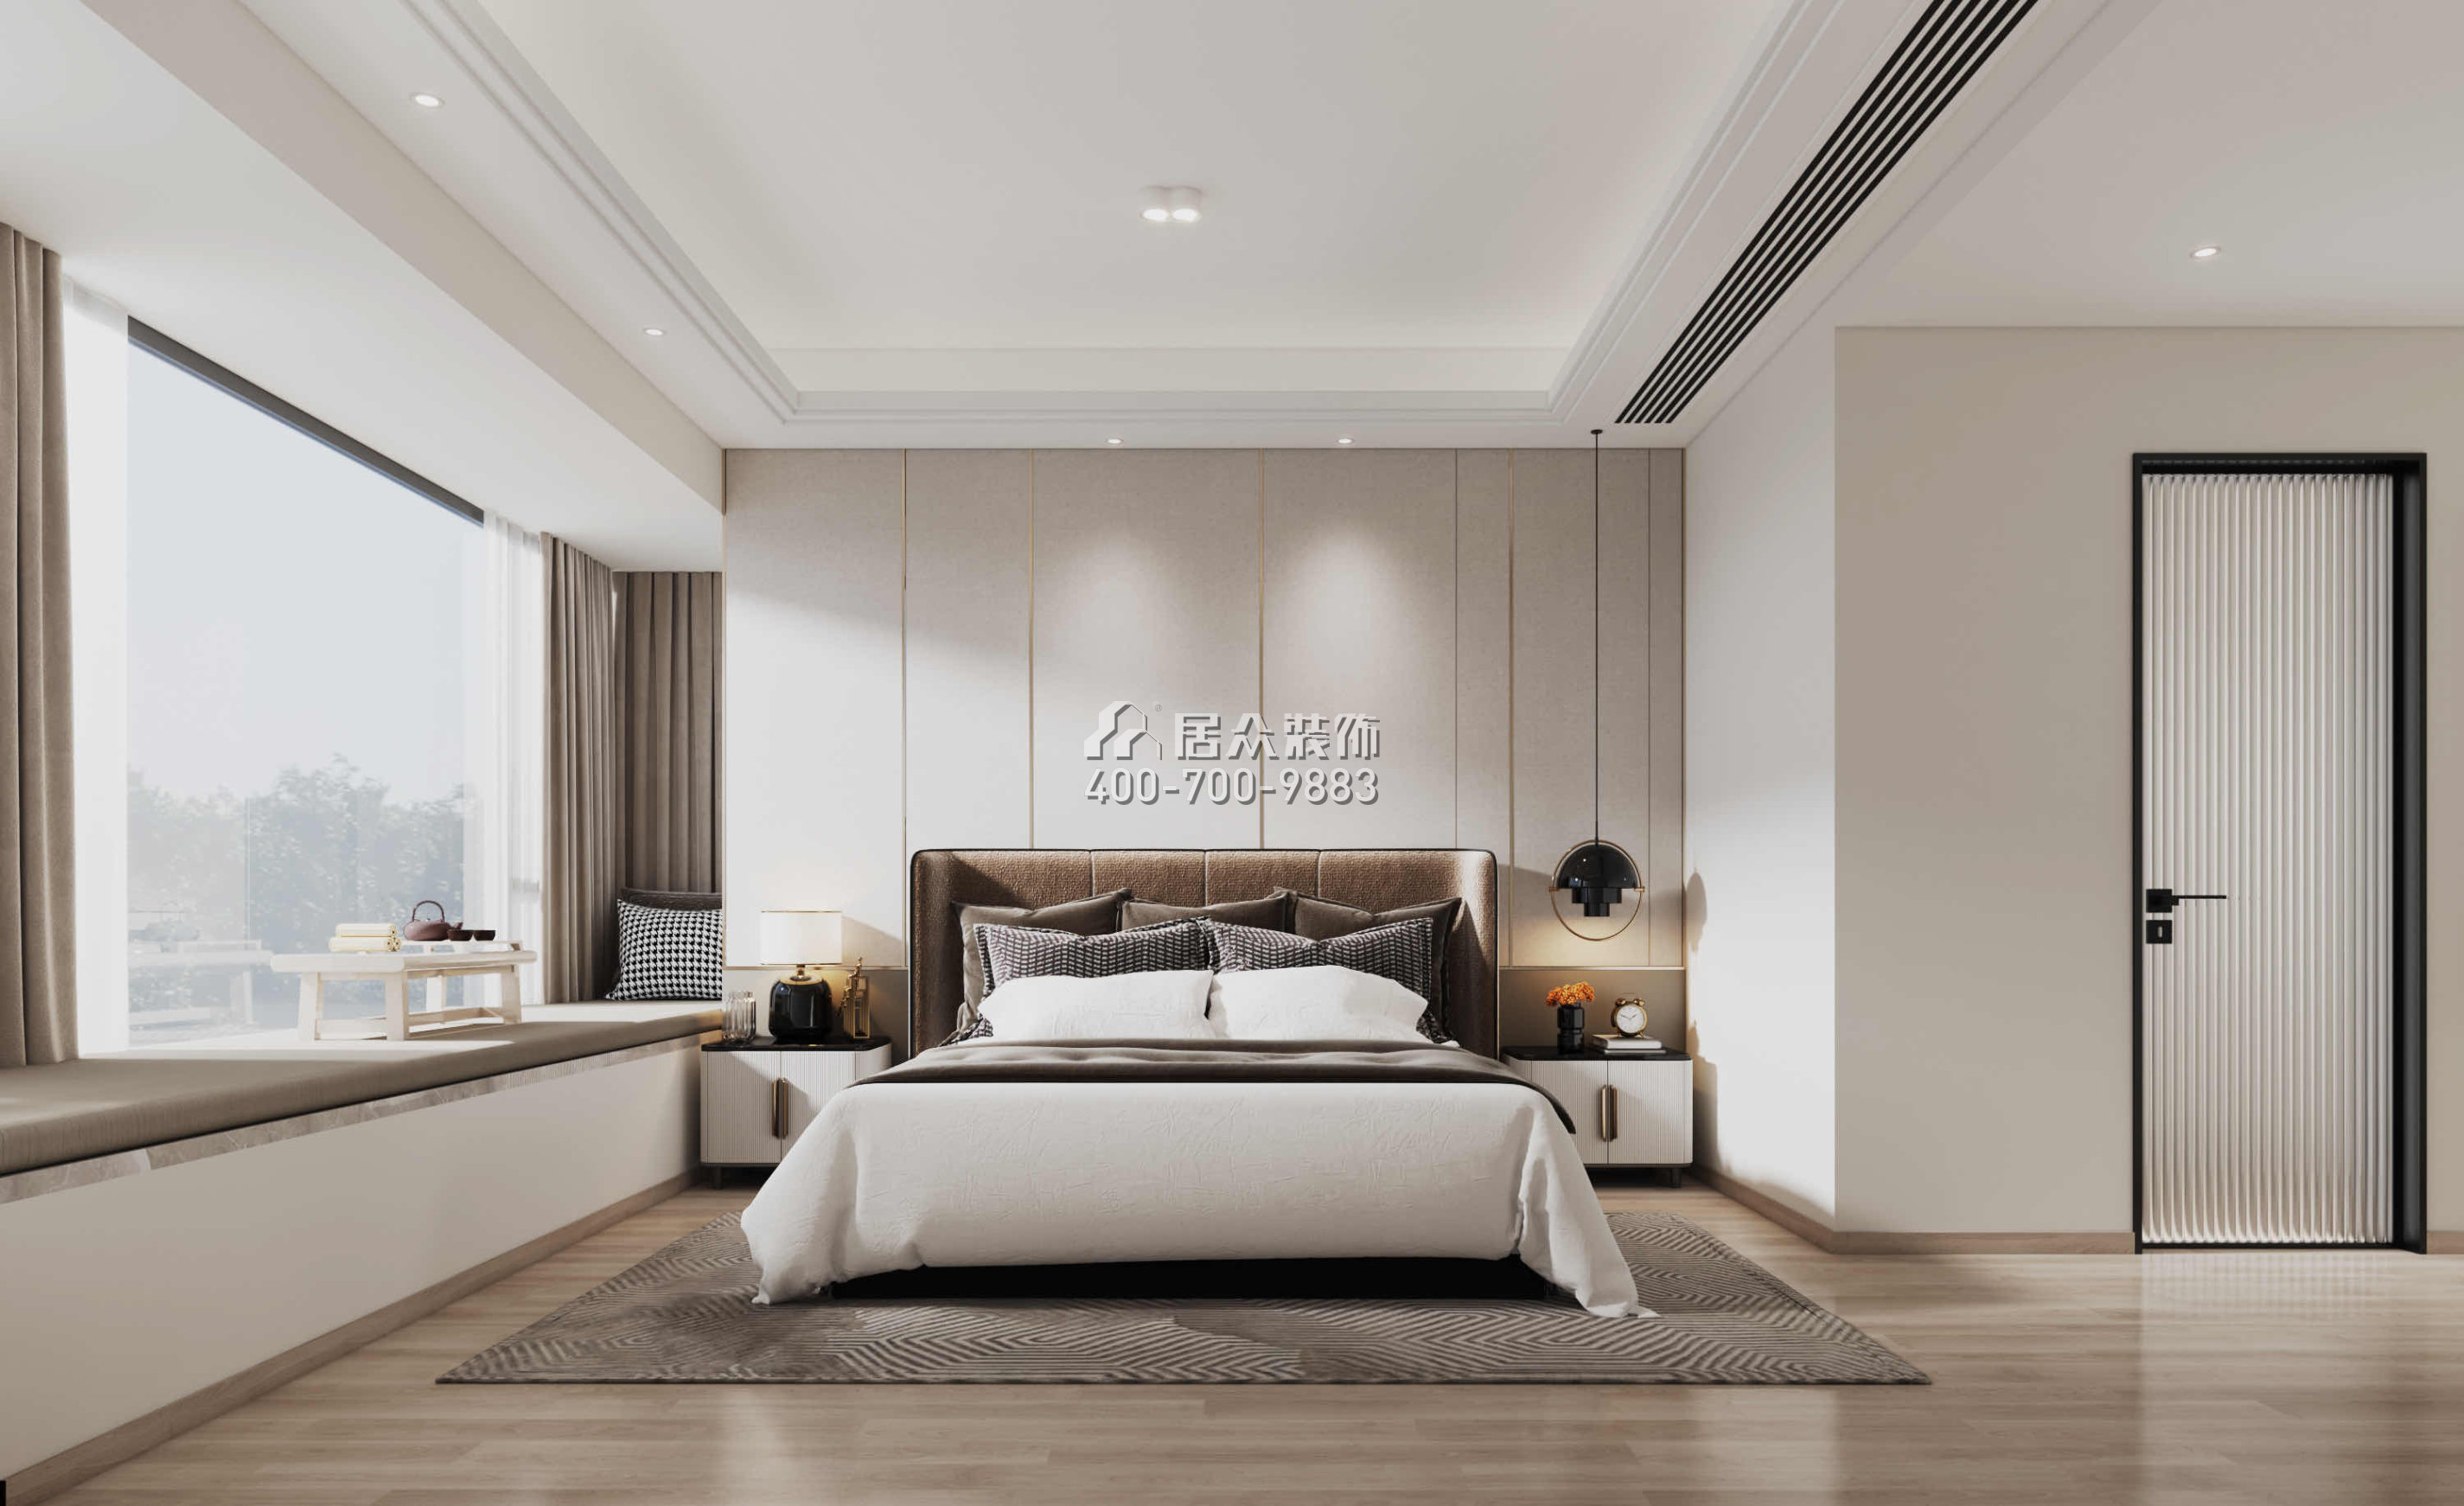 华发绿洋湾191平方米现代简约风格平层户型卧室装修效果图